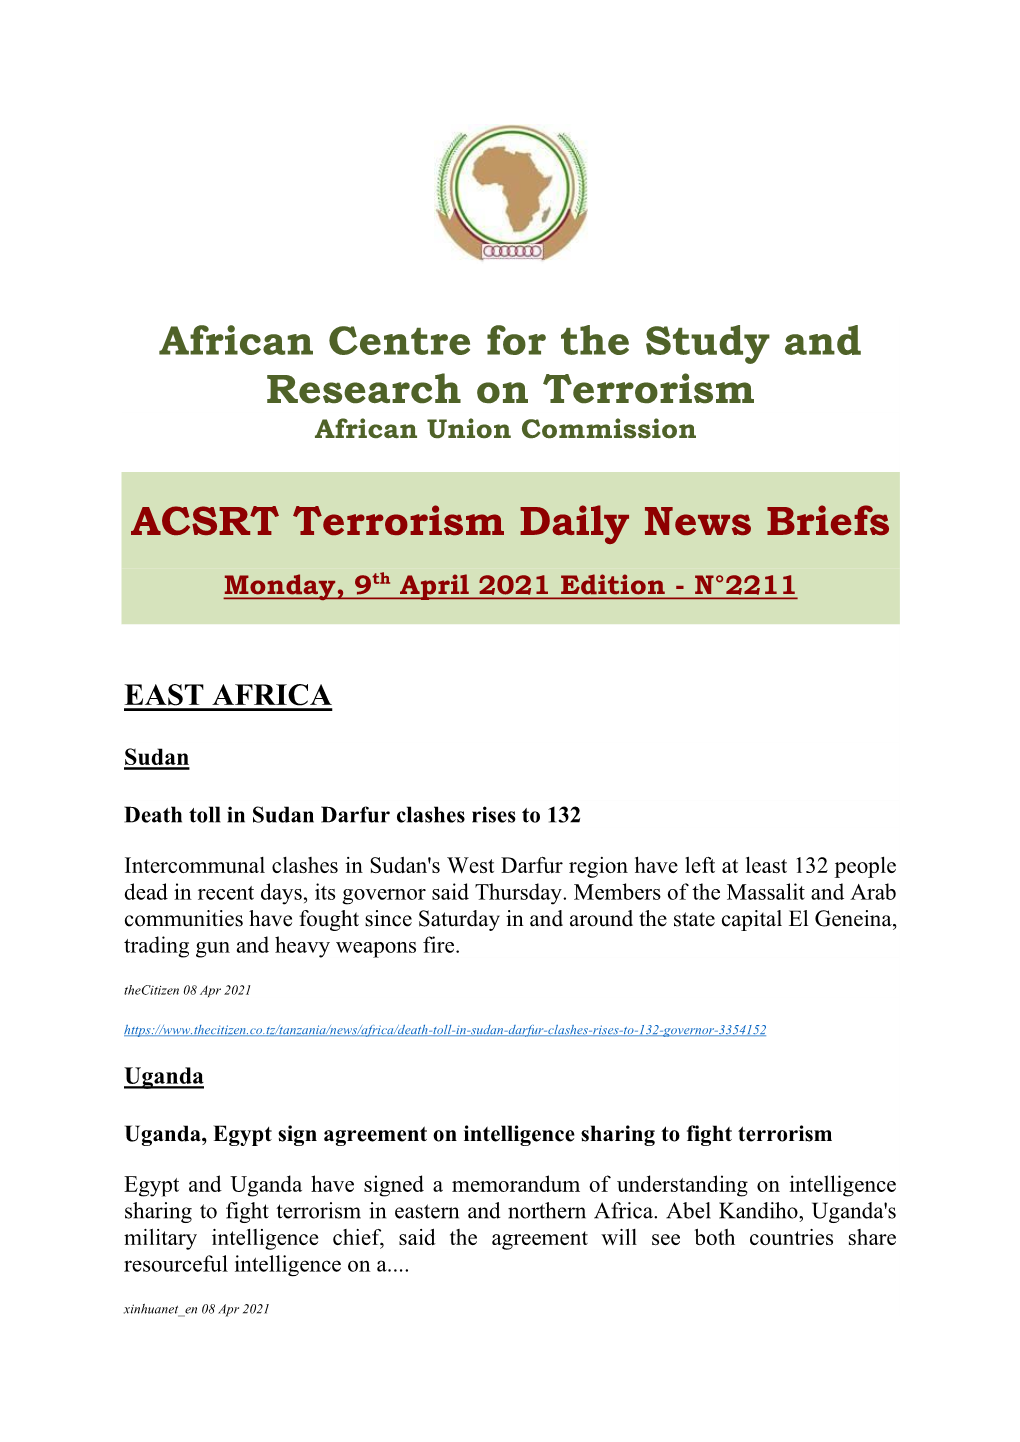 ACSRT Terrorism Daily News Briefs